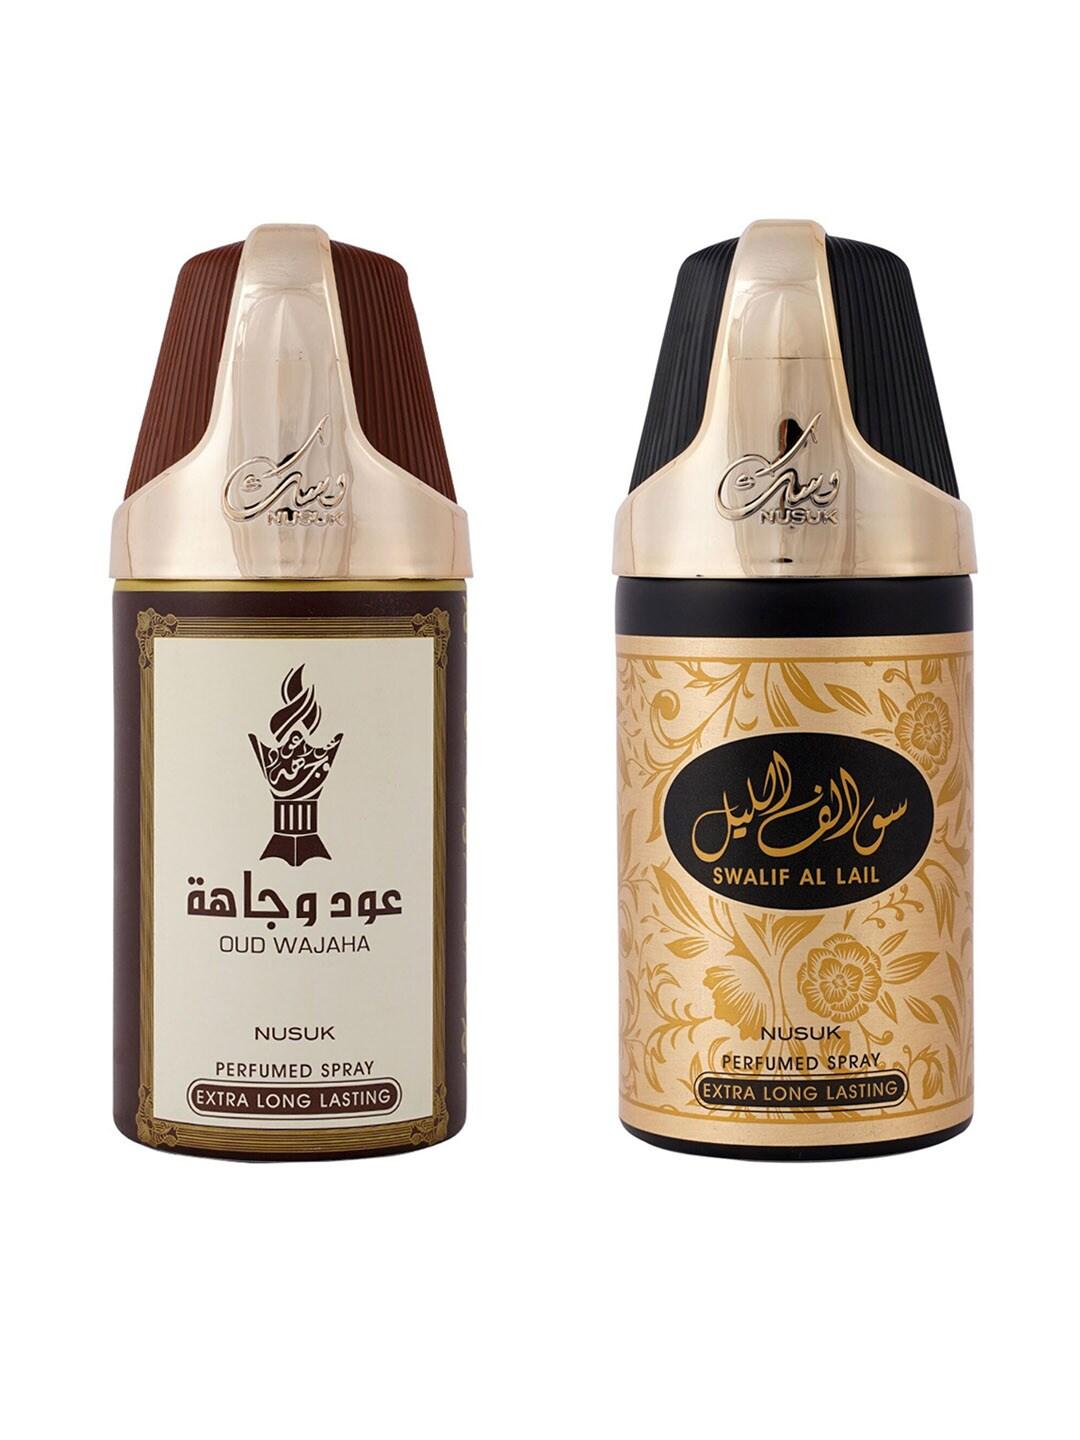 NUSUK Set of 2 Long Lasting Deodorants 250 ml each - Oud Wajah & Swalif Al lail